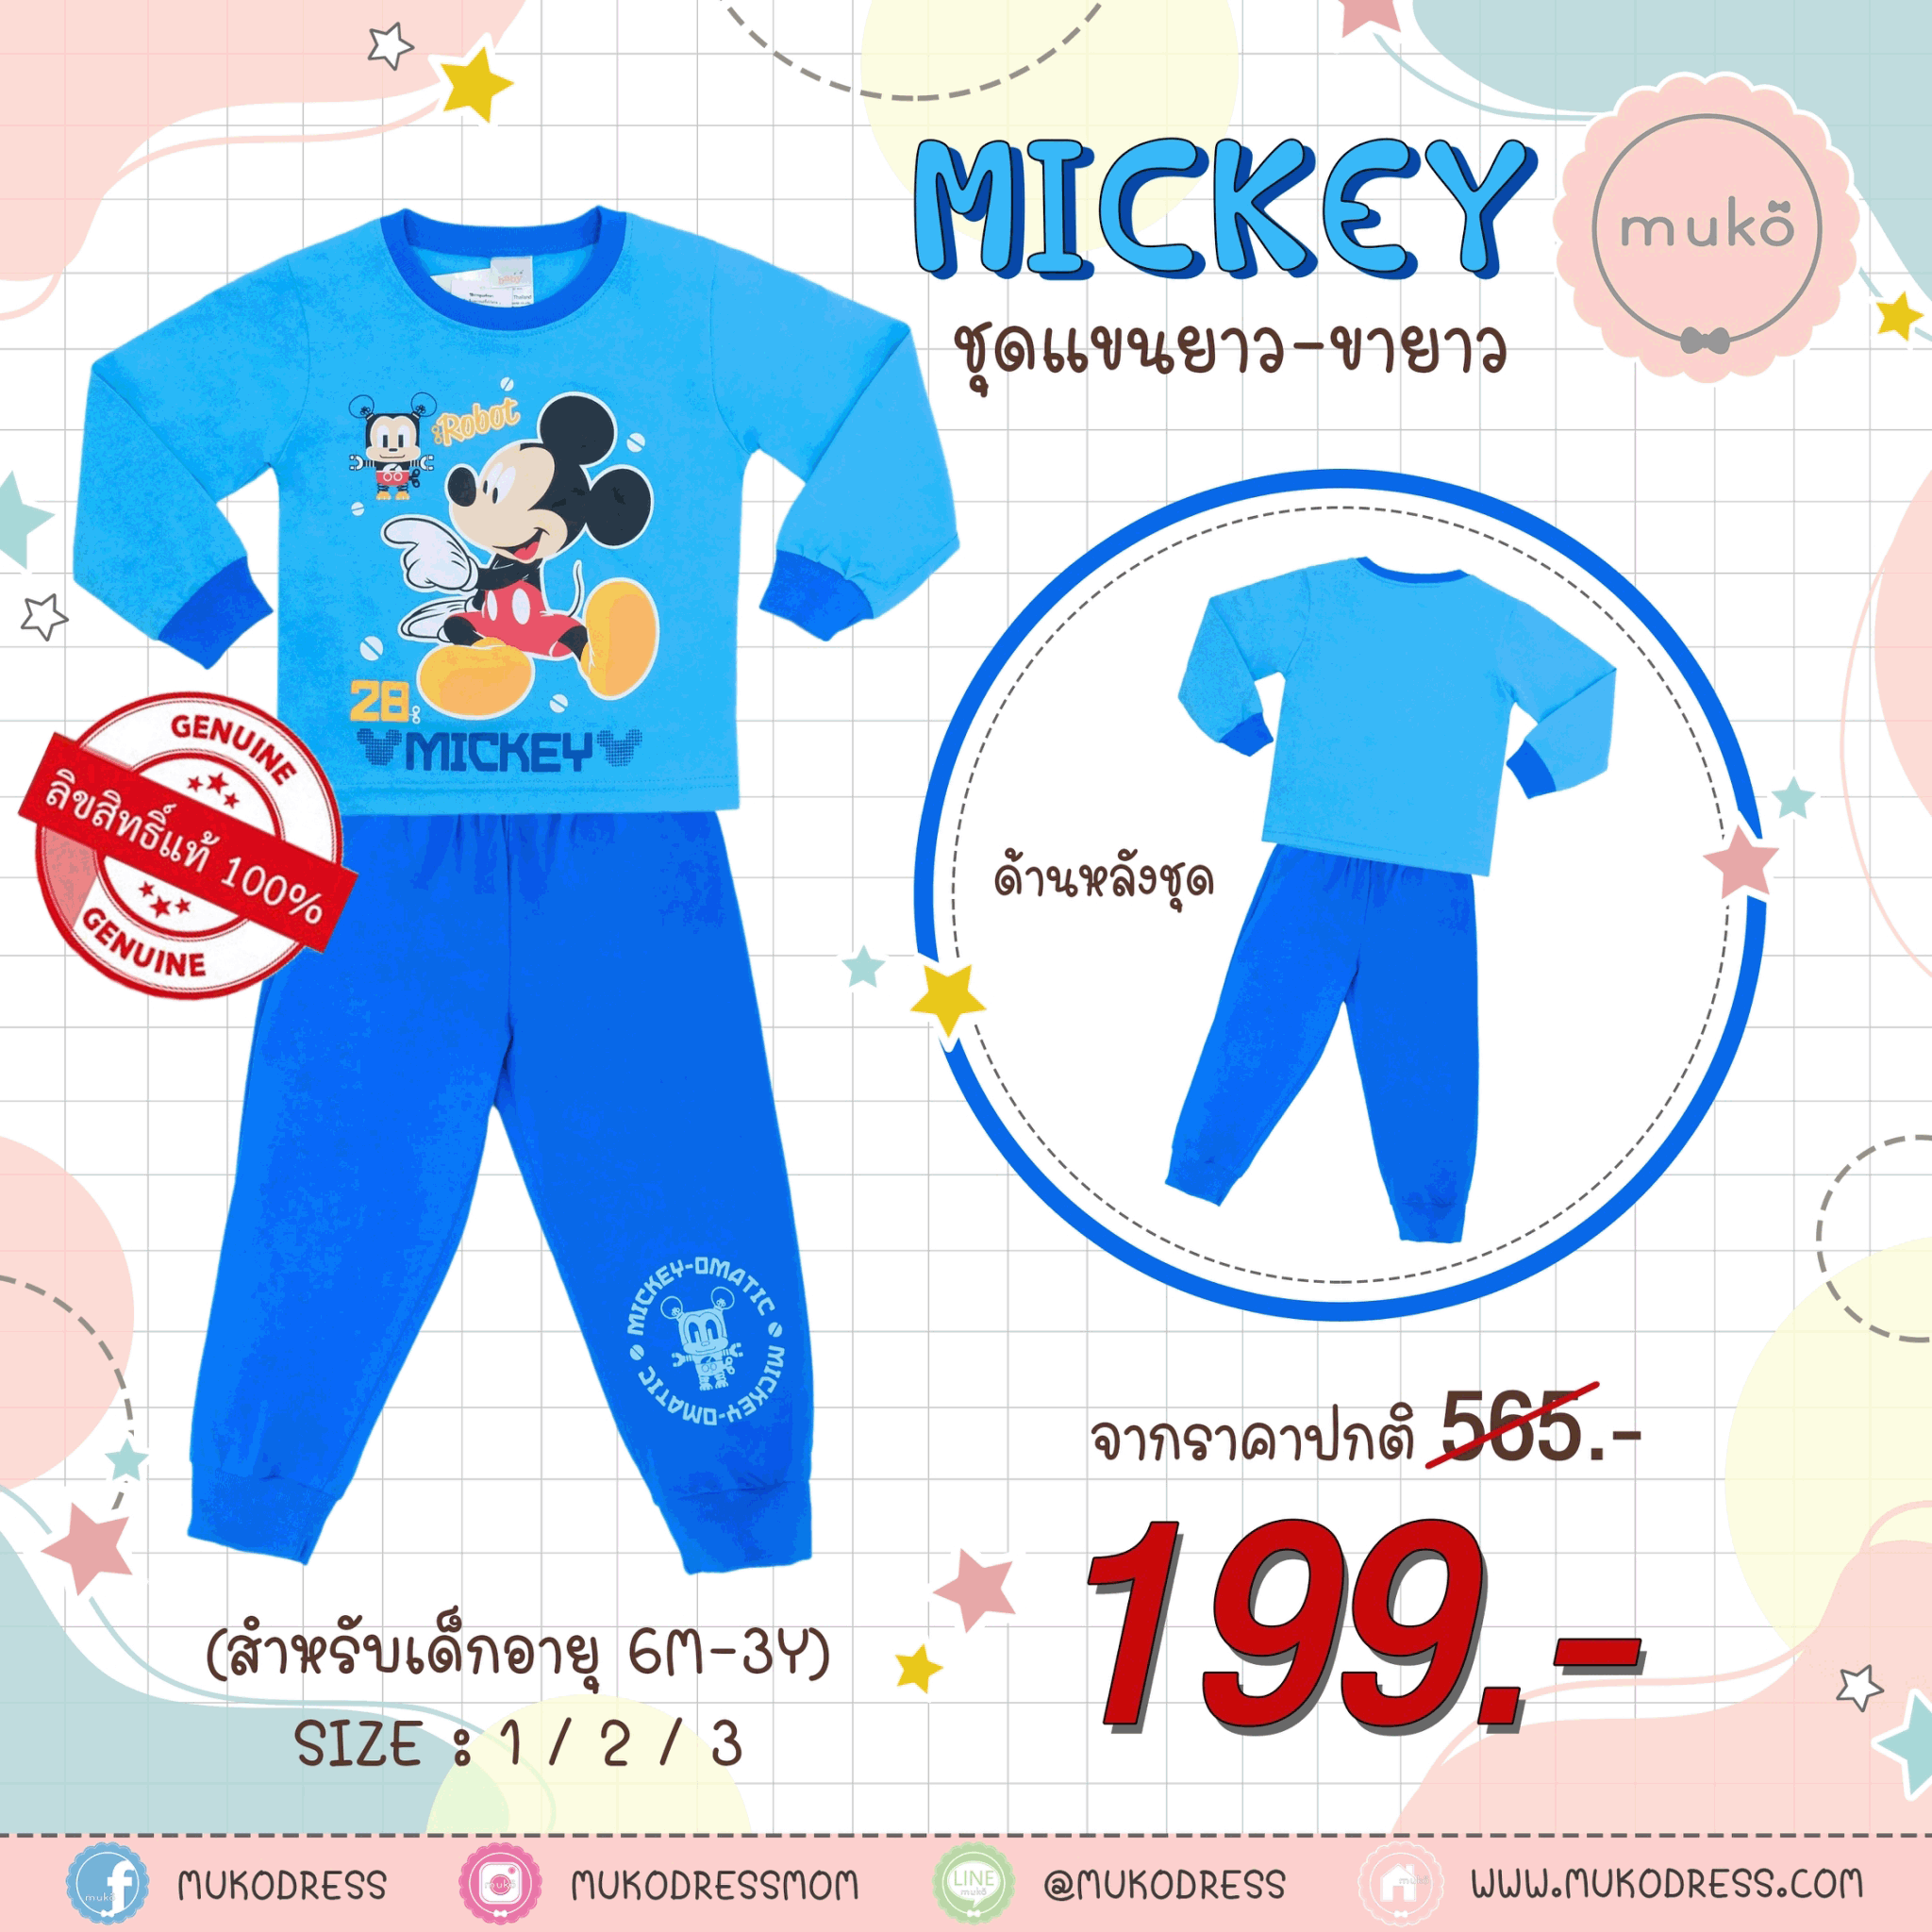 ชุดเด็ก 1-2 ขวบ แขนยาว-ขายาว (Size 2) DMK127-02-3-Blue 2 ลาย มิกกี้ เมาส์ Mickey Mouse สีฟ้า